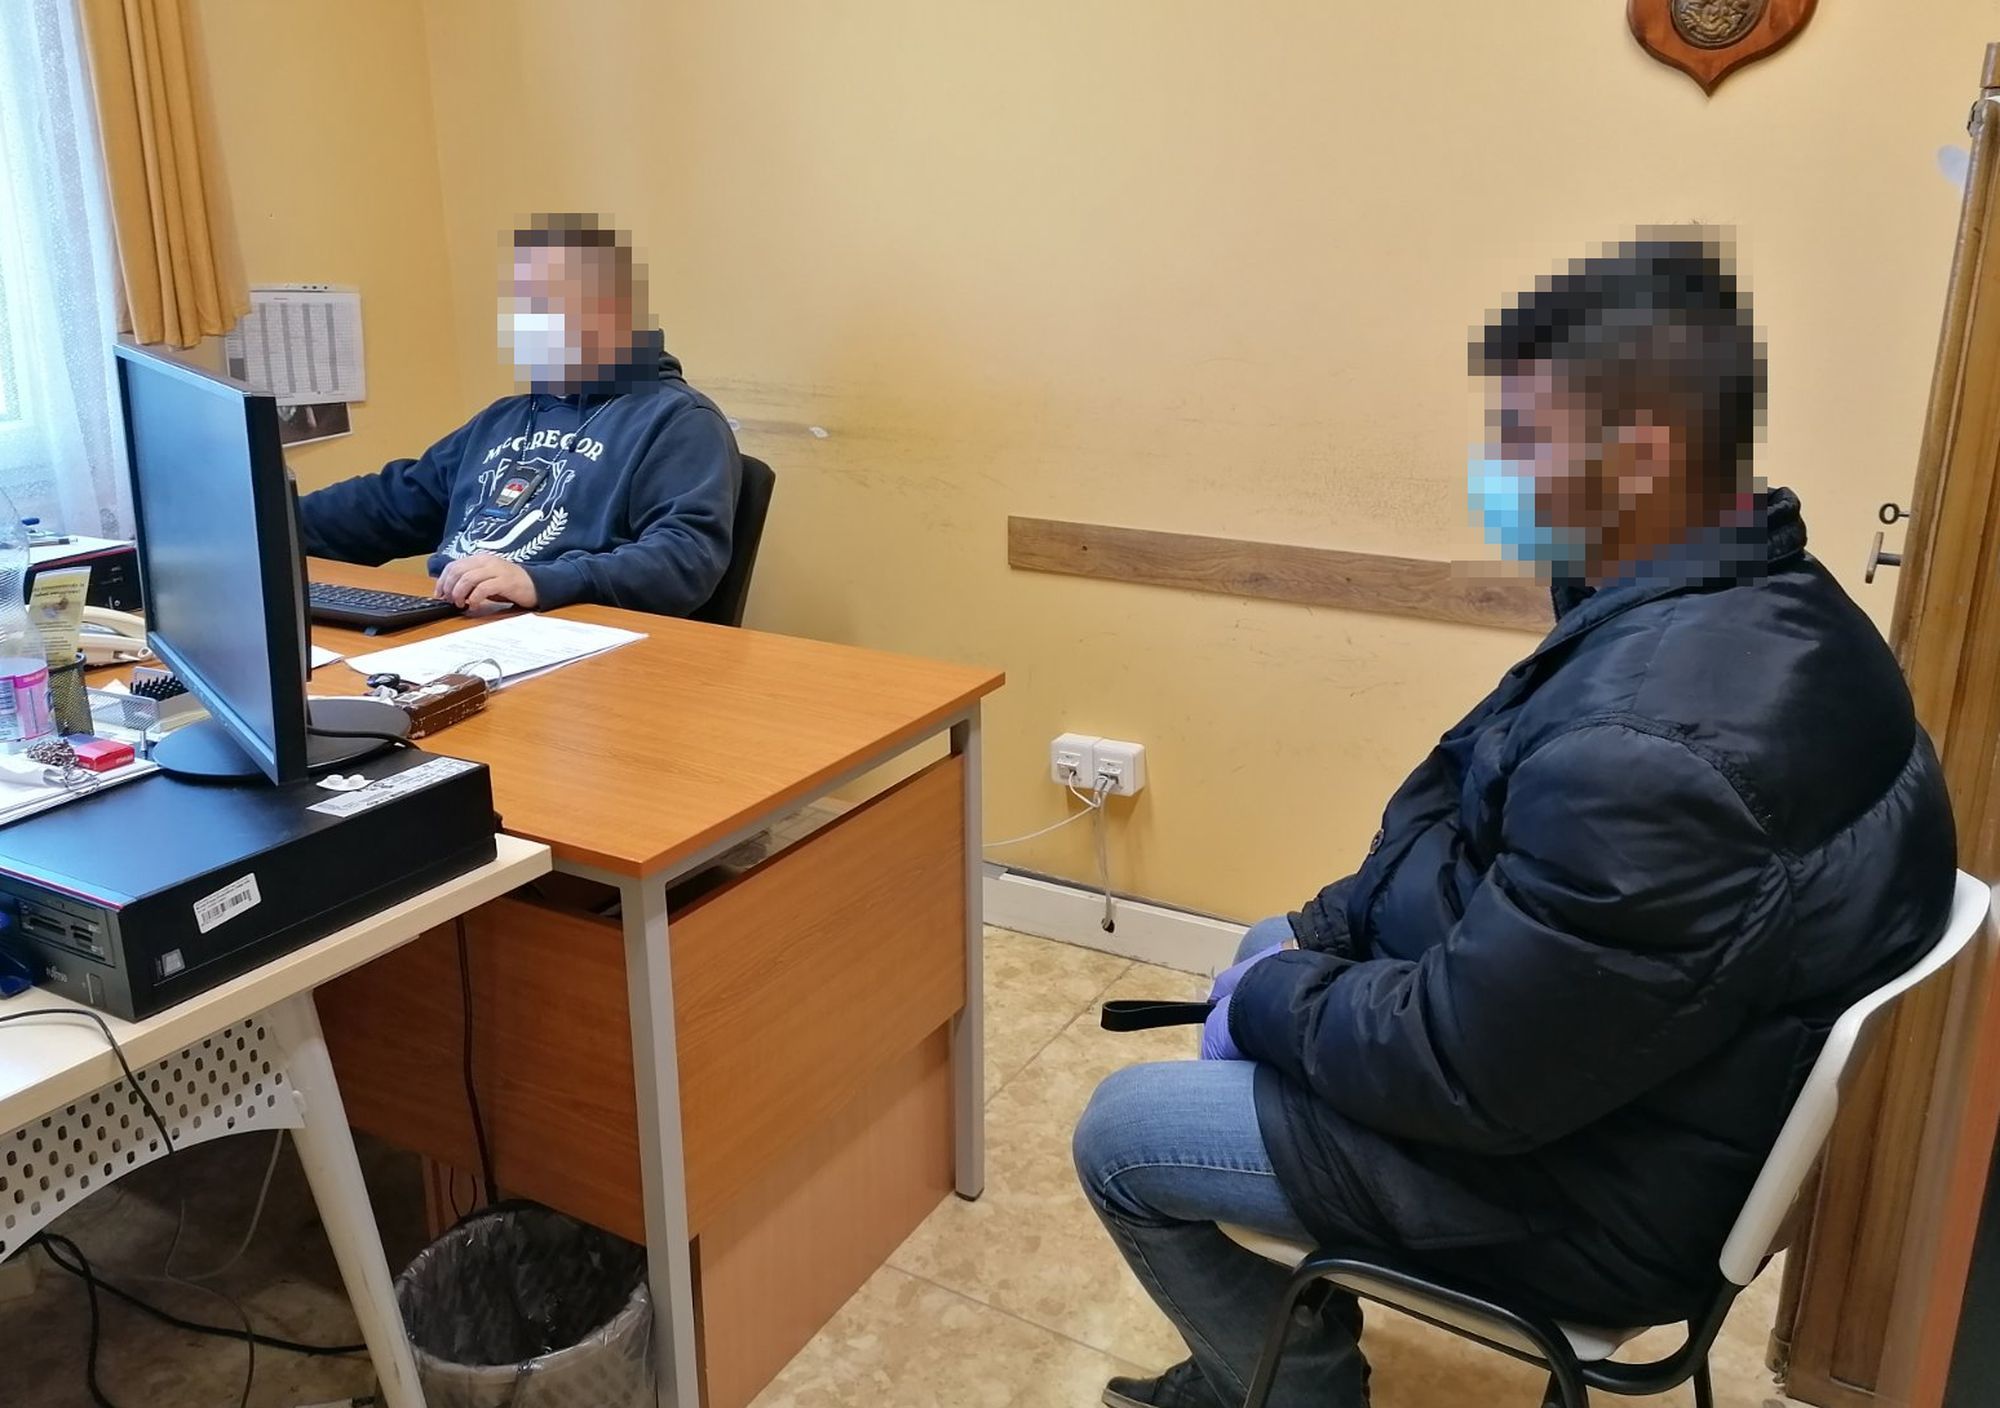 18 éves fiú rabolt ki egy dohányboltot Mátészalkán - Blikk